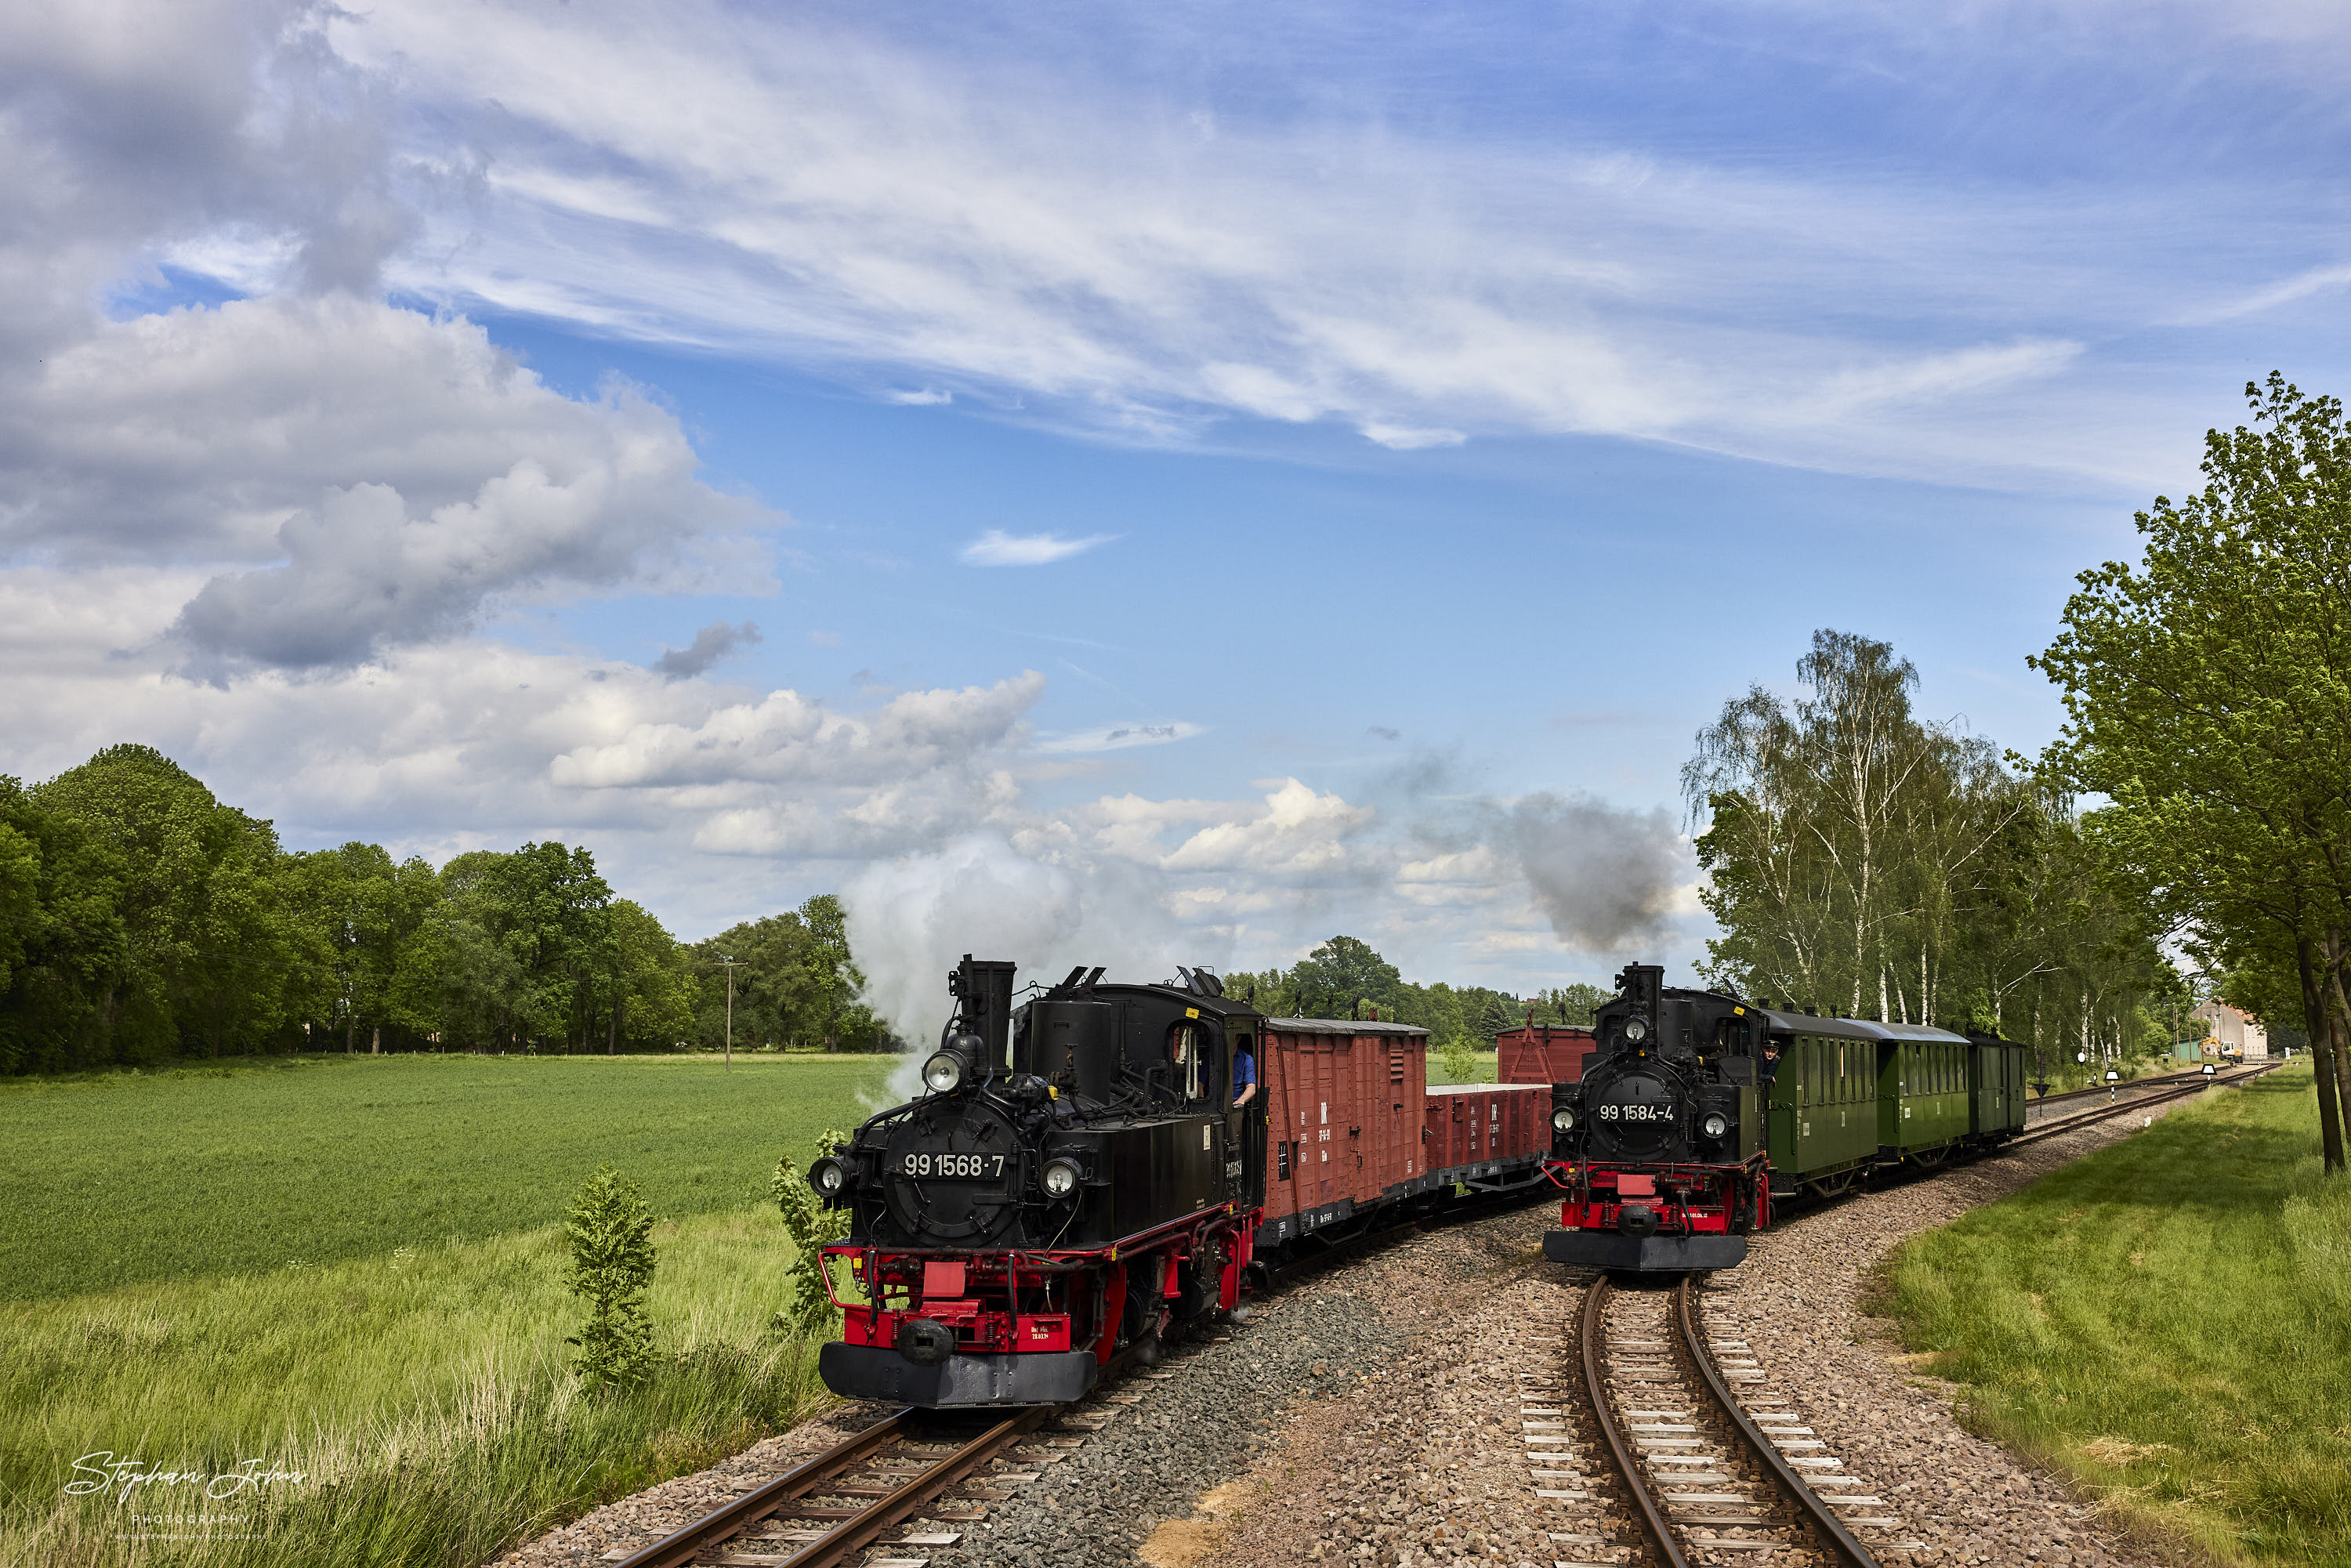 Ausfahrt eines Güterzuges mit Lok 99 1568-7 und eines Personenzuges mit Lok 99 1584-4 aus dem Bahnhof Nebitzschen